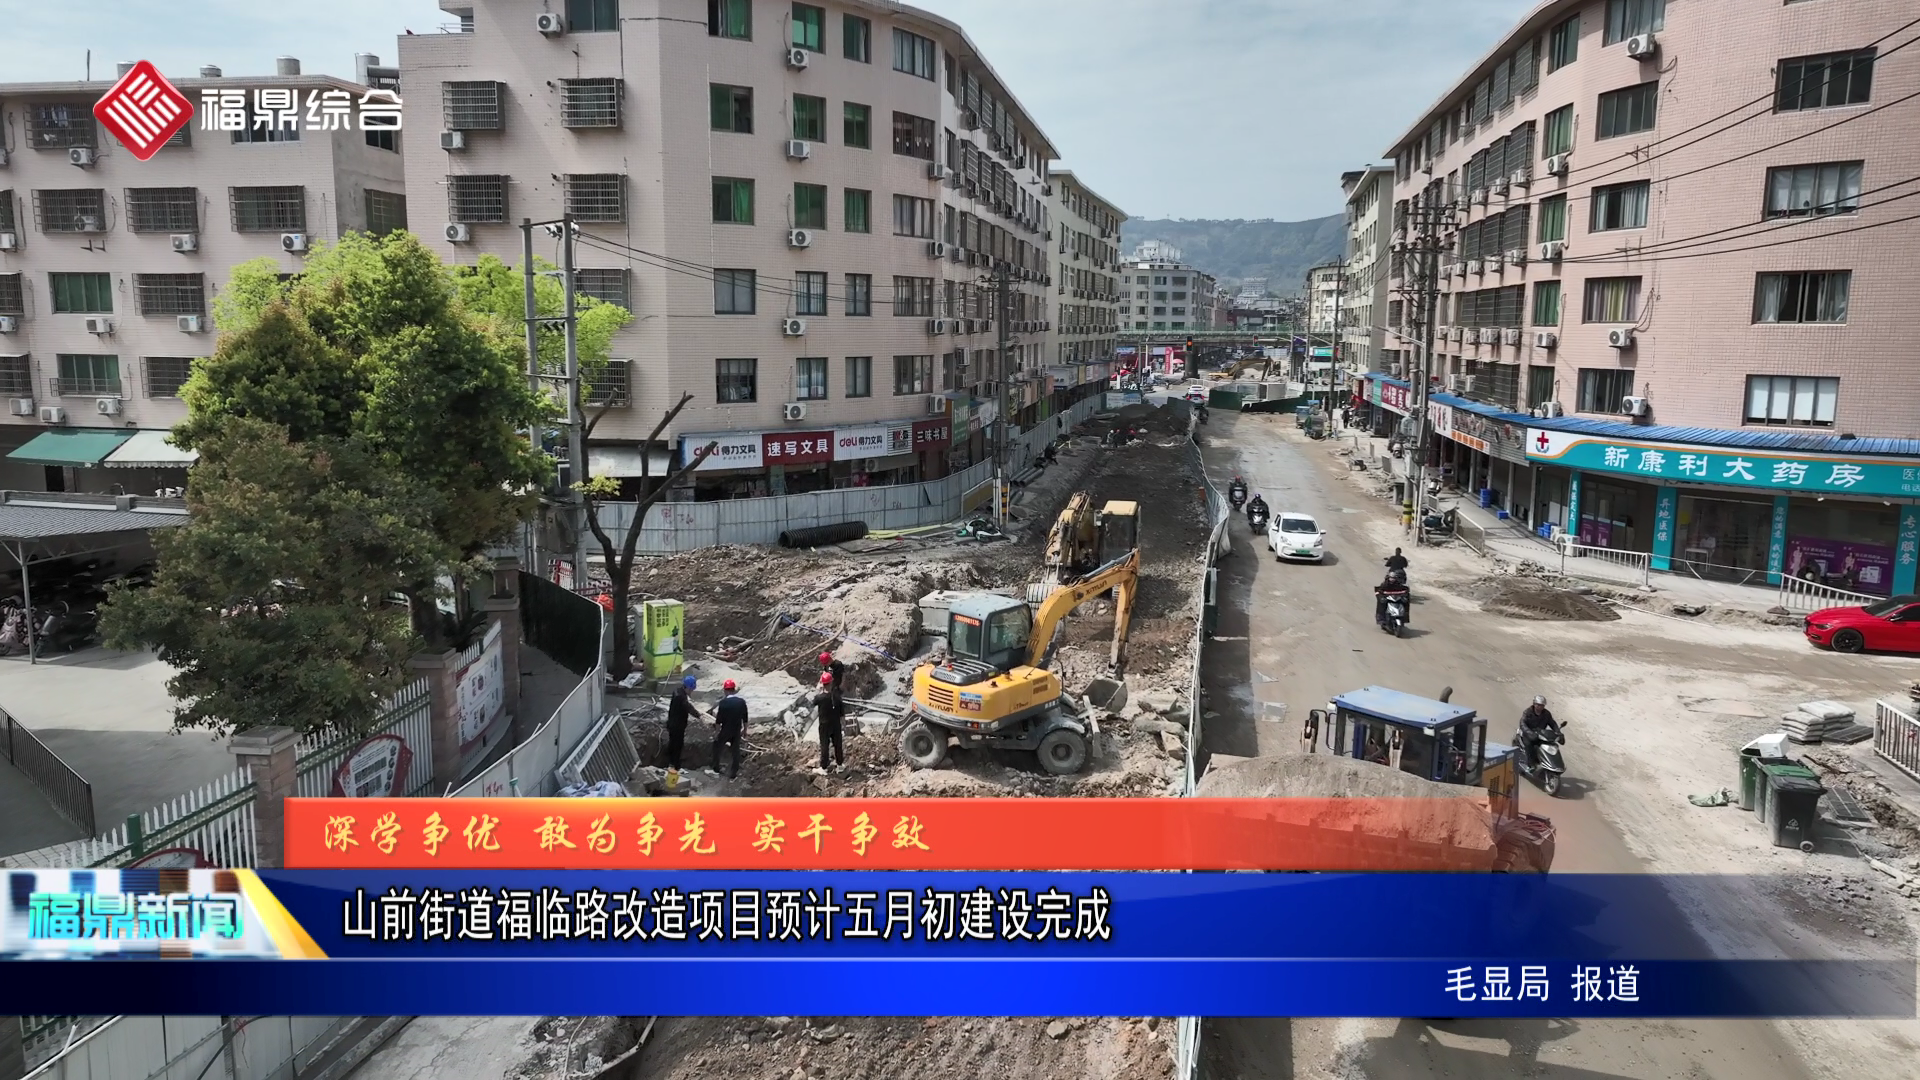 山前街道福臨路改造項目預計五月初建設完成